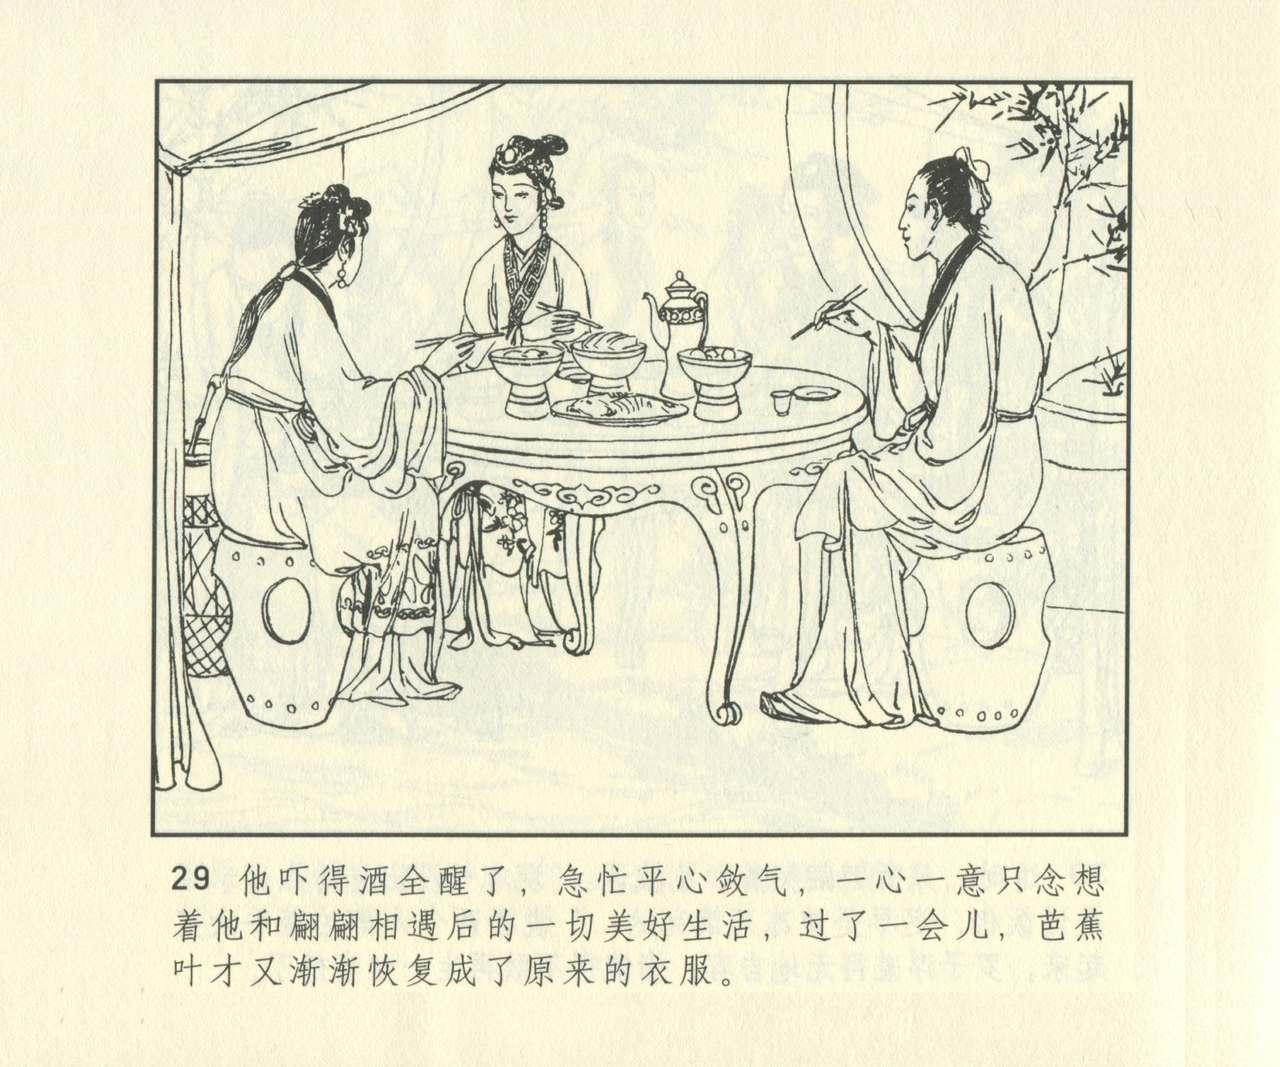 聊斋志异 张玮等绘 天津人民美术出版社 卷二十一 ~ 三十 645